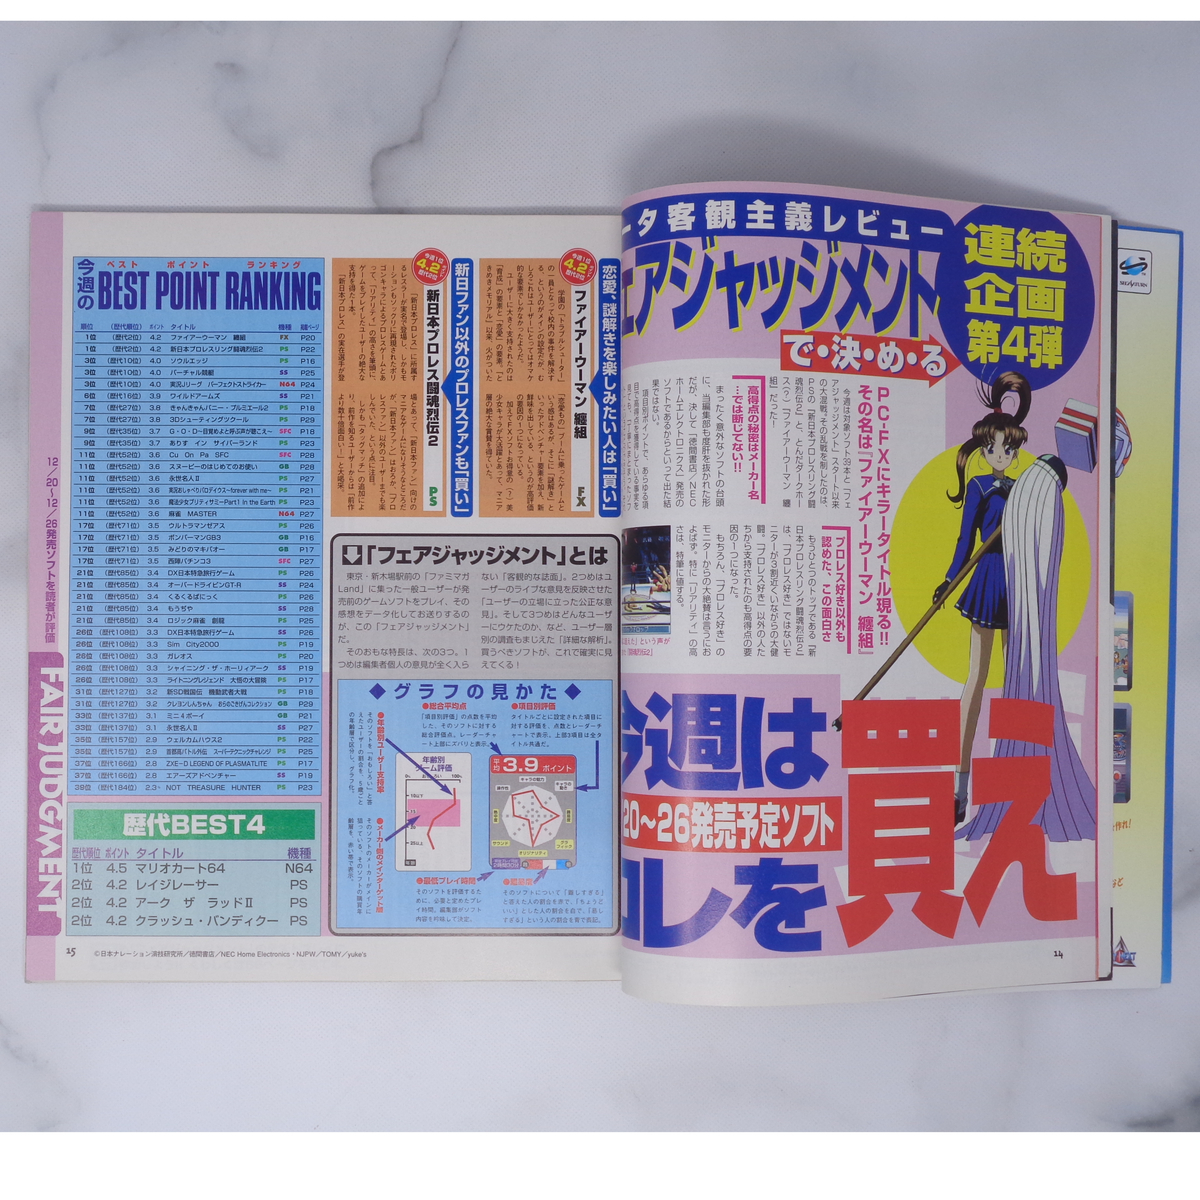 ファミマガWeekly 1997年1月3日号【テープ補修跡あり】/ワイルドアームズ/ファイターズメガミックス/ゲーム雑誌[Free Shipping]の画像9